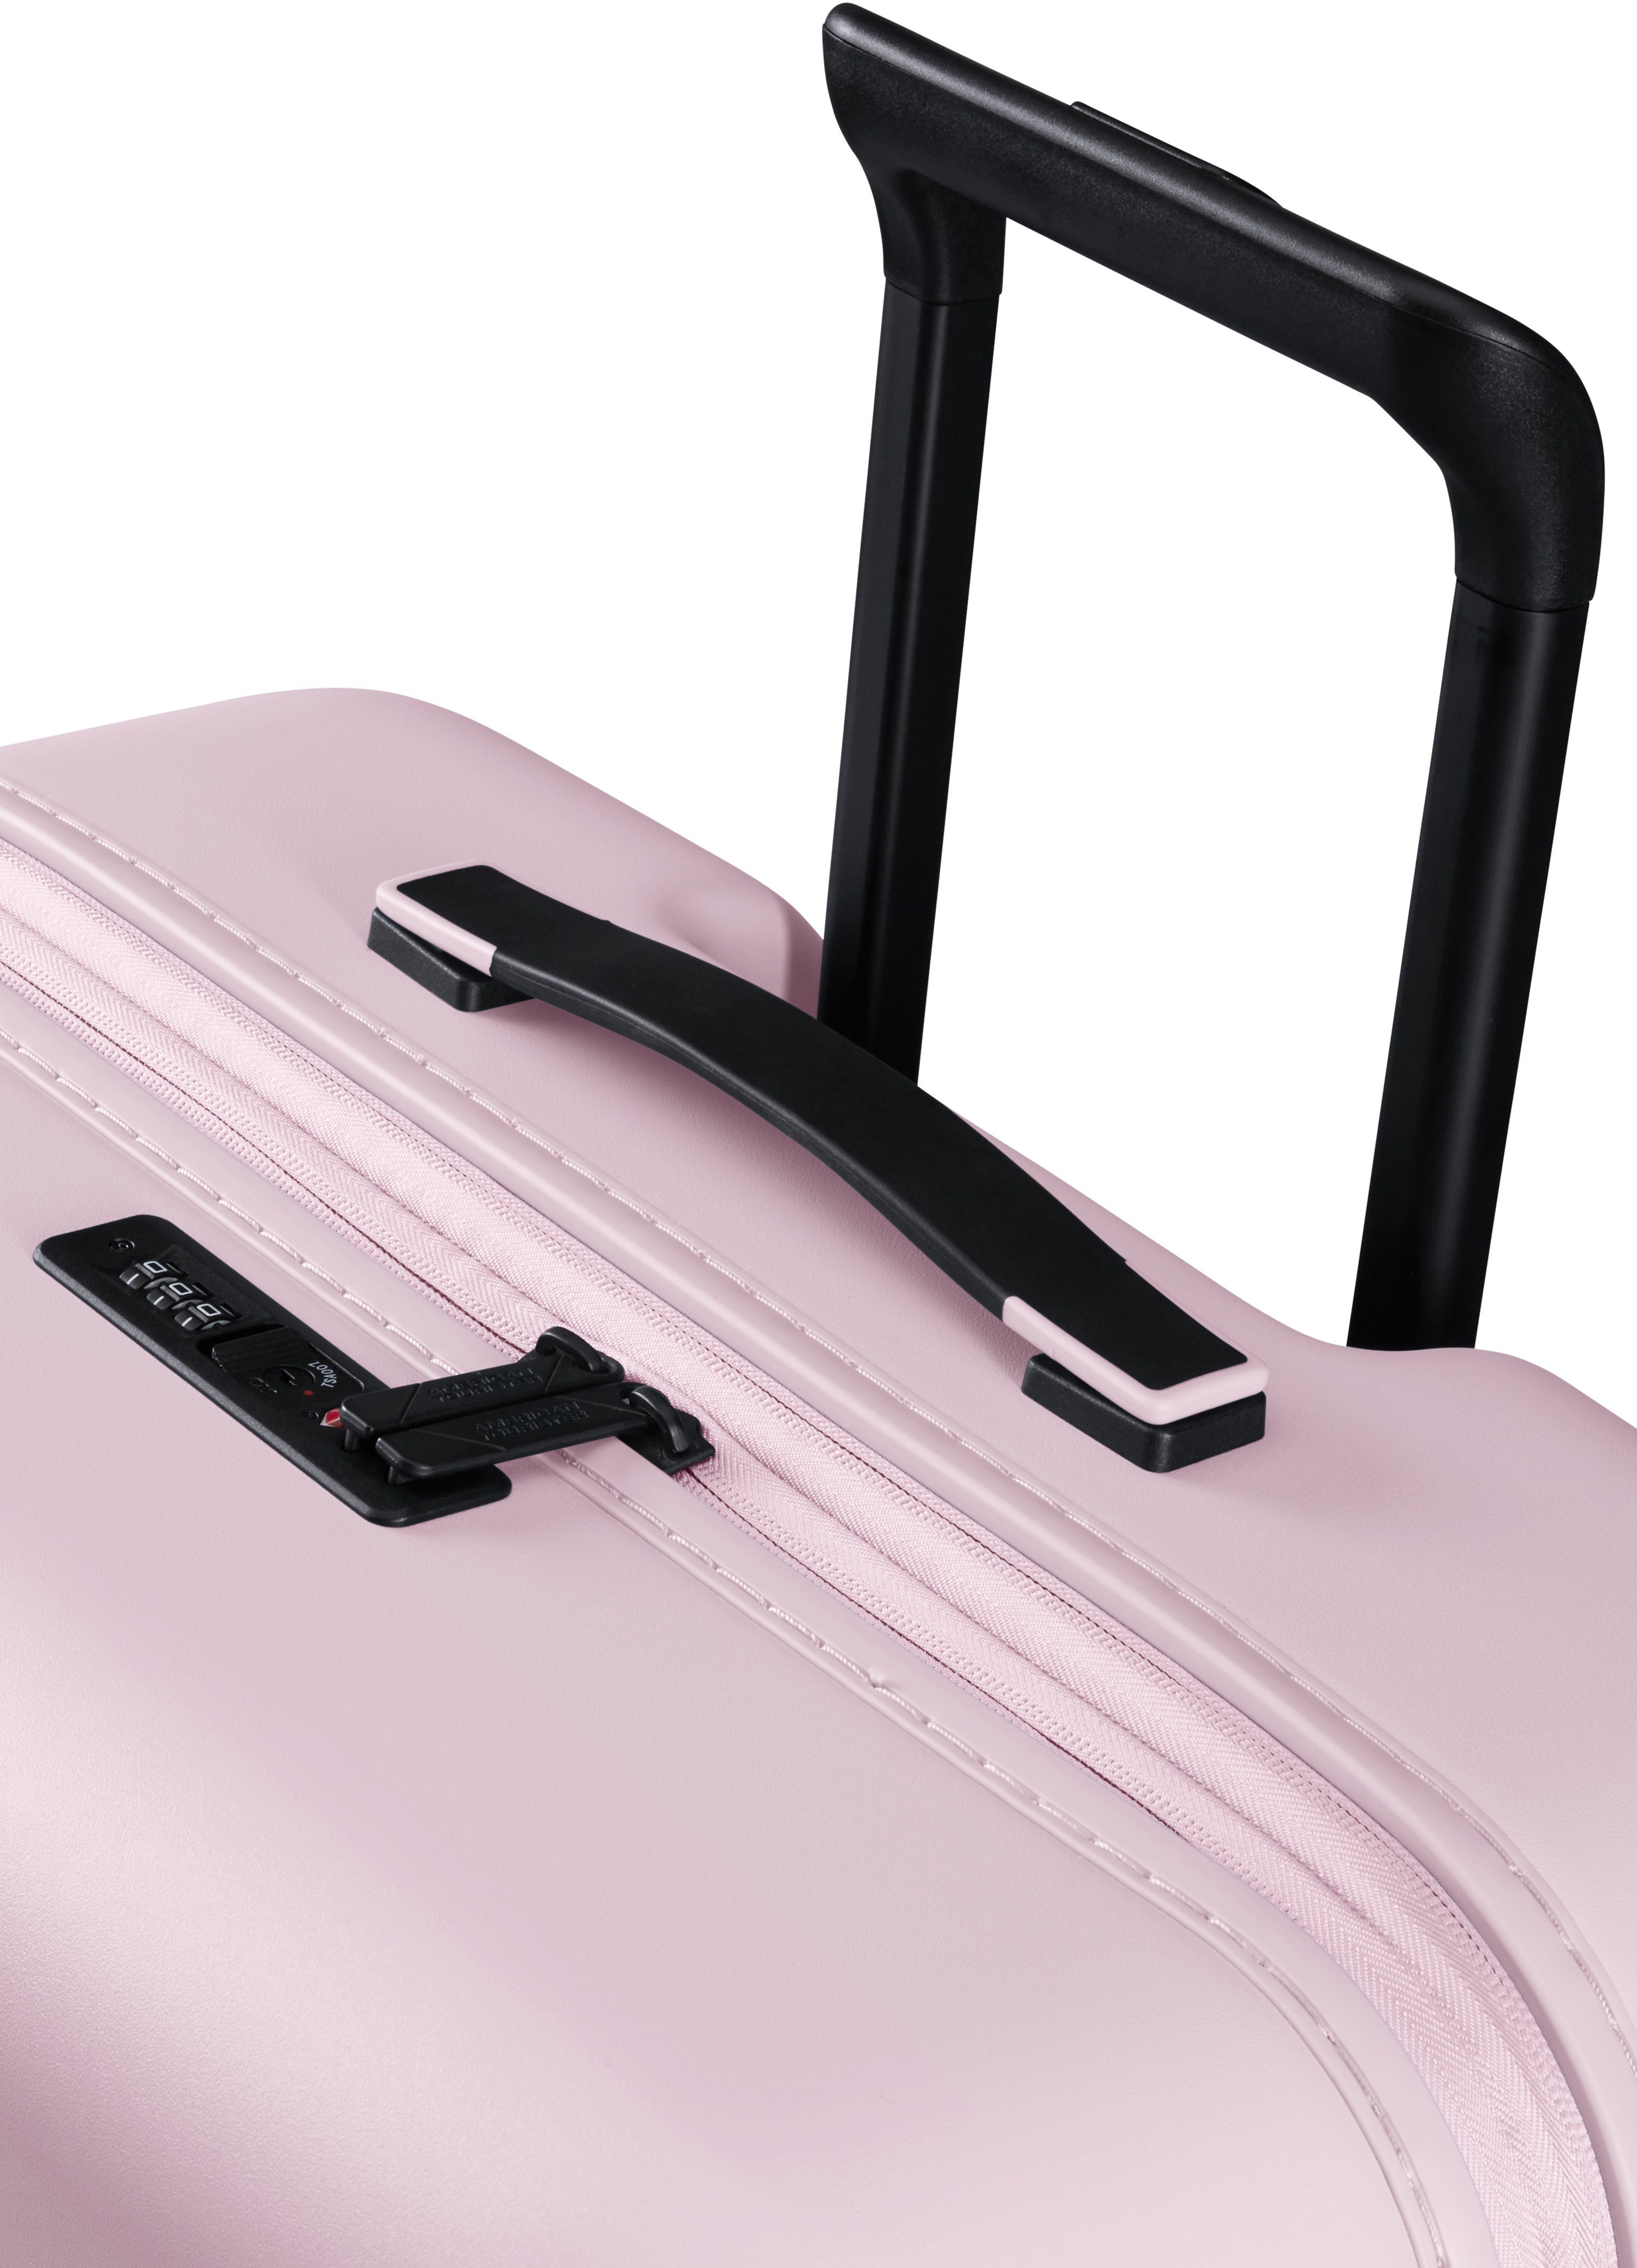 Volumenerweiterung Pink Hartschalen-Trolley Rollen, mit cm, 77 American Soft Tourister® 4 Novastream,